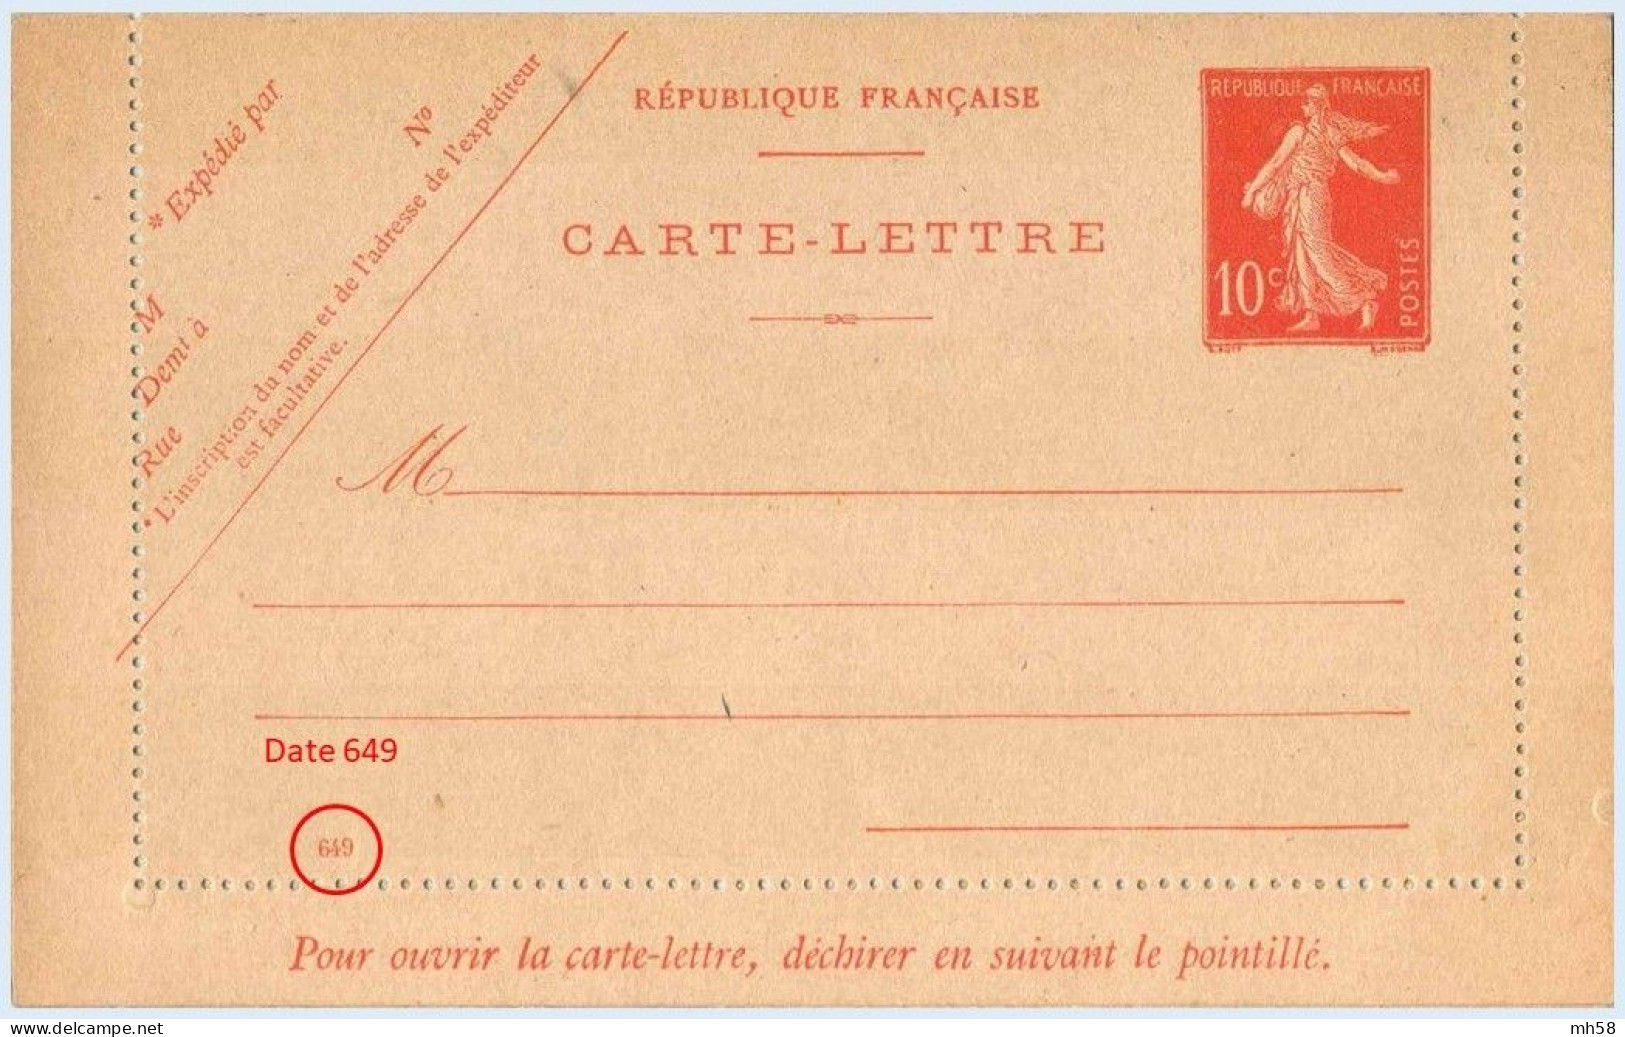 Entier FRANCE - Carte-lettre Date 649 Neuf - 10c Semeuse Maigre Rouge - Cartes-lettres